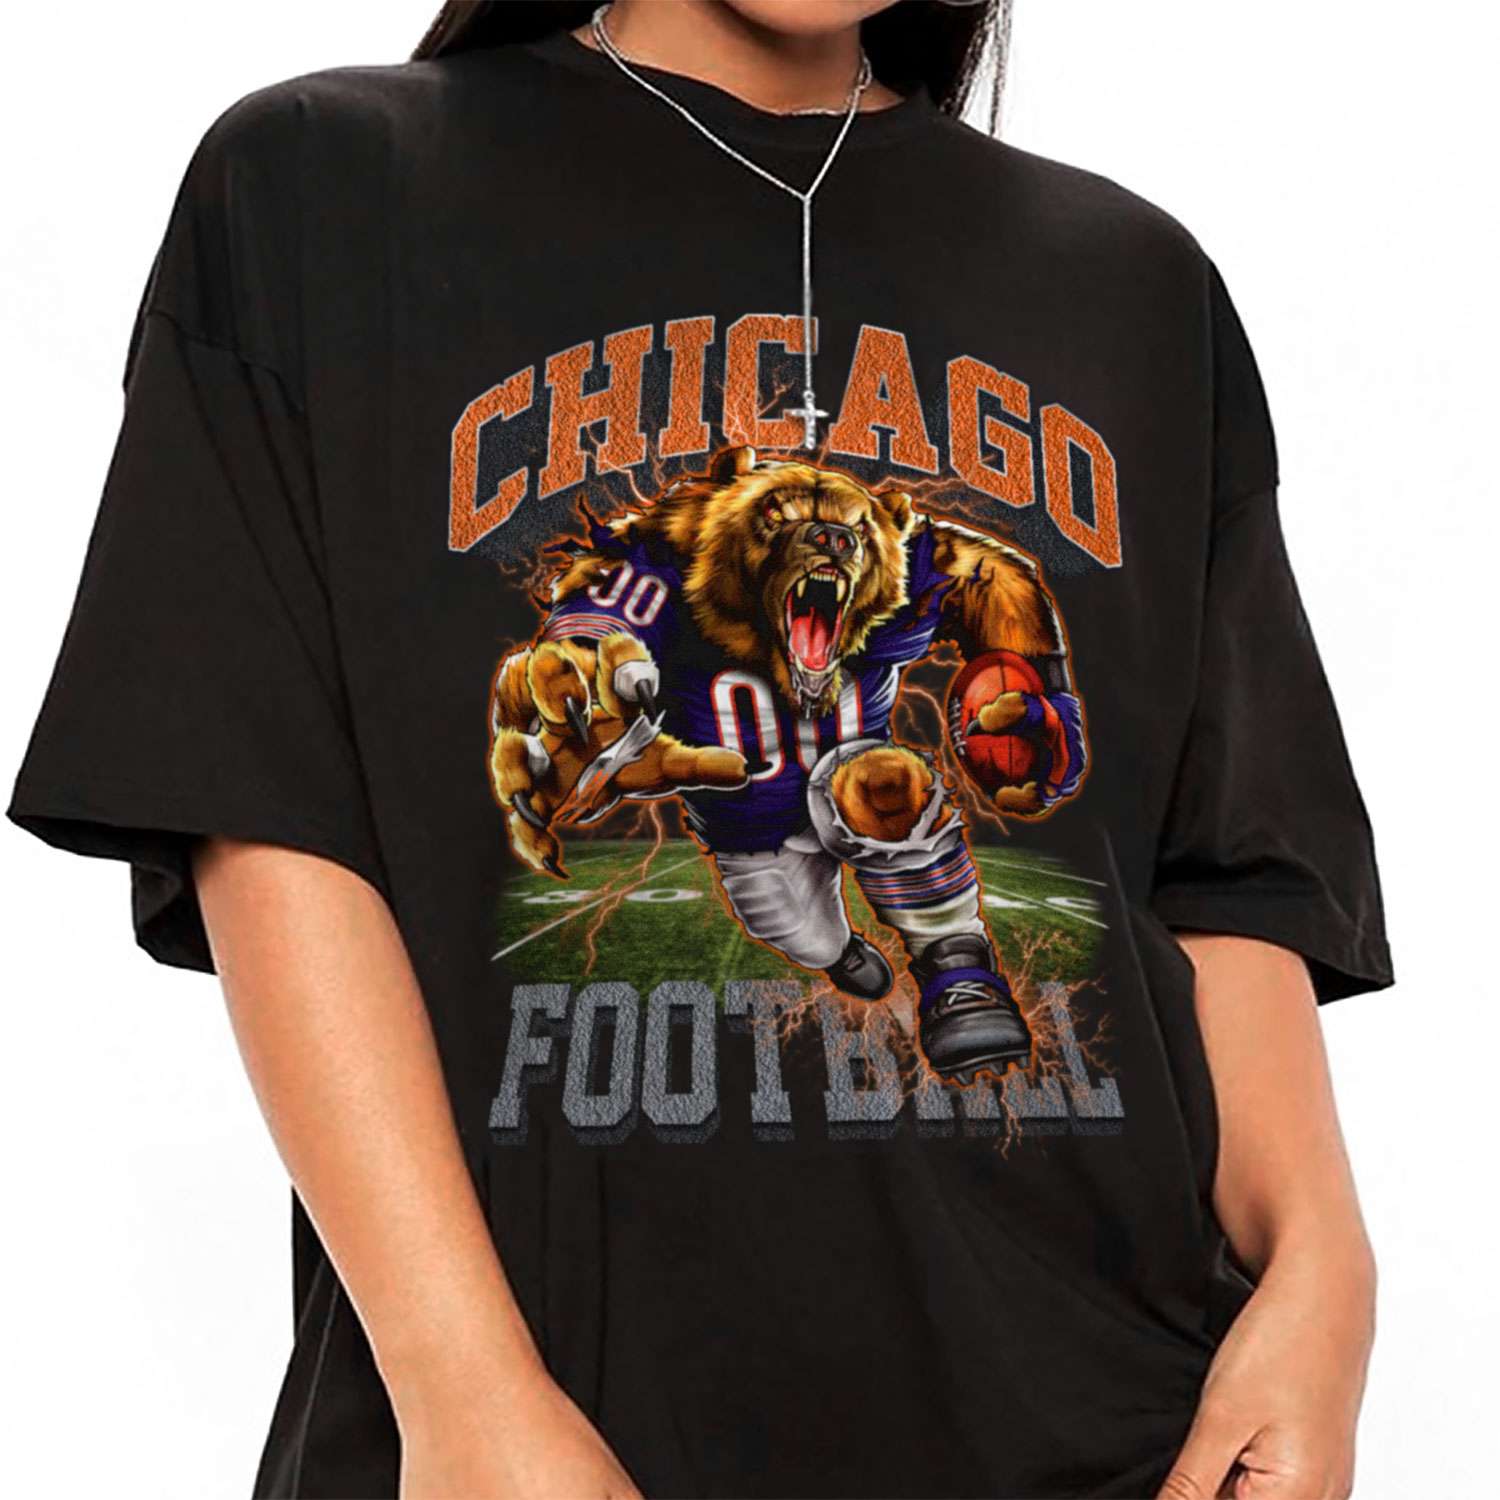 chicago bears shirt